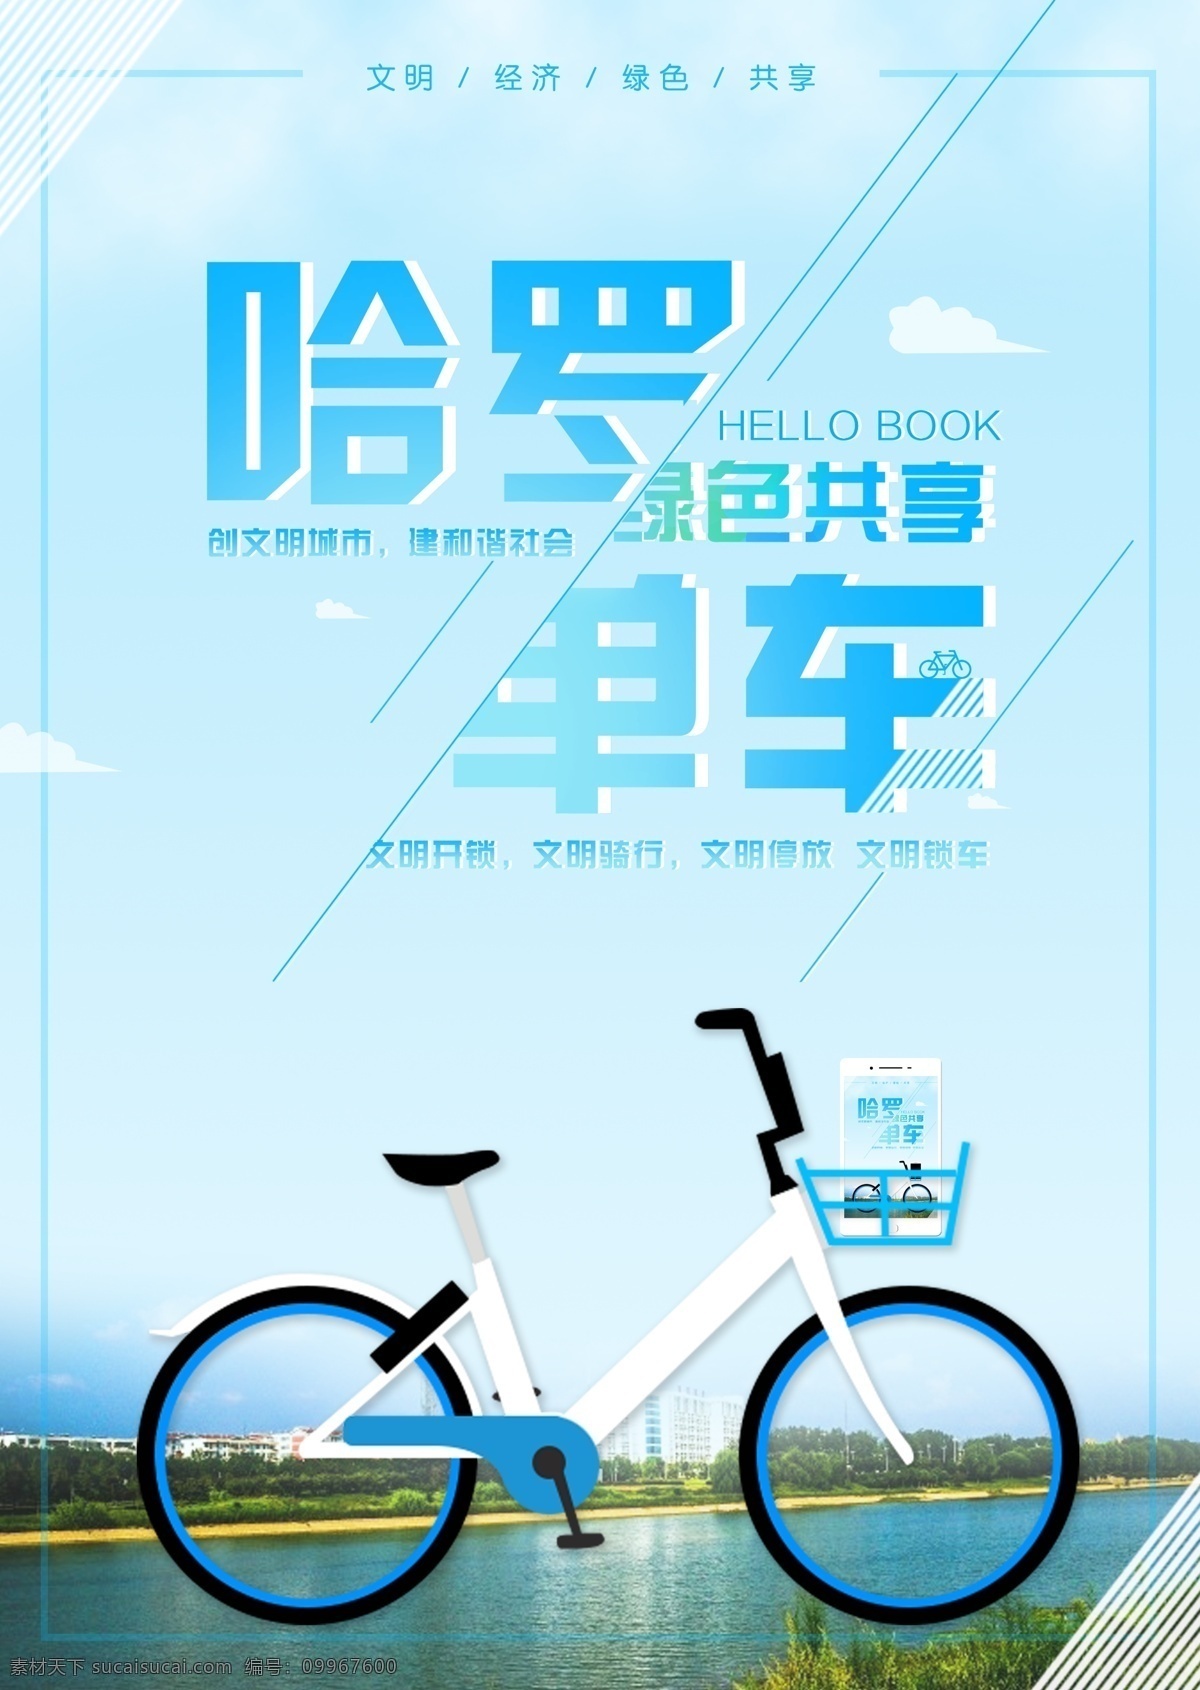 哈罗 单车 宣传海报 展板 共享 海报 简约 绿色 漯河 清新